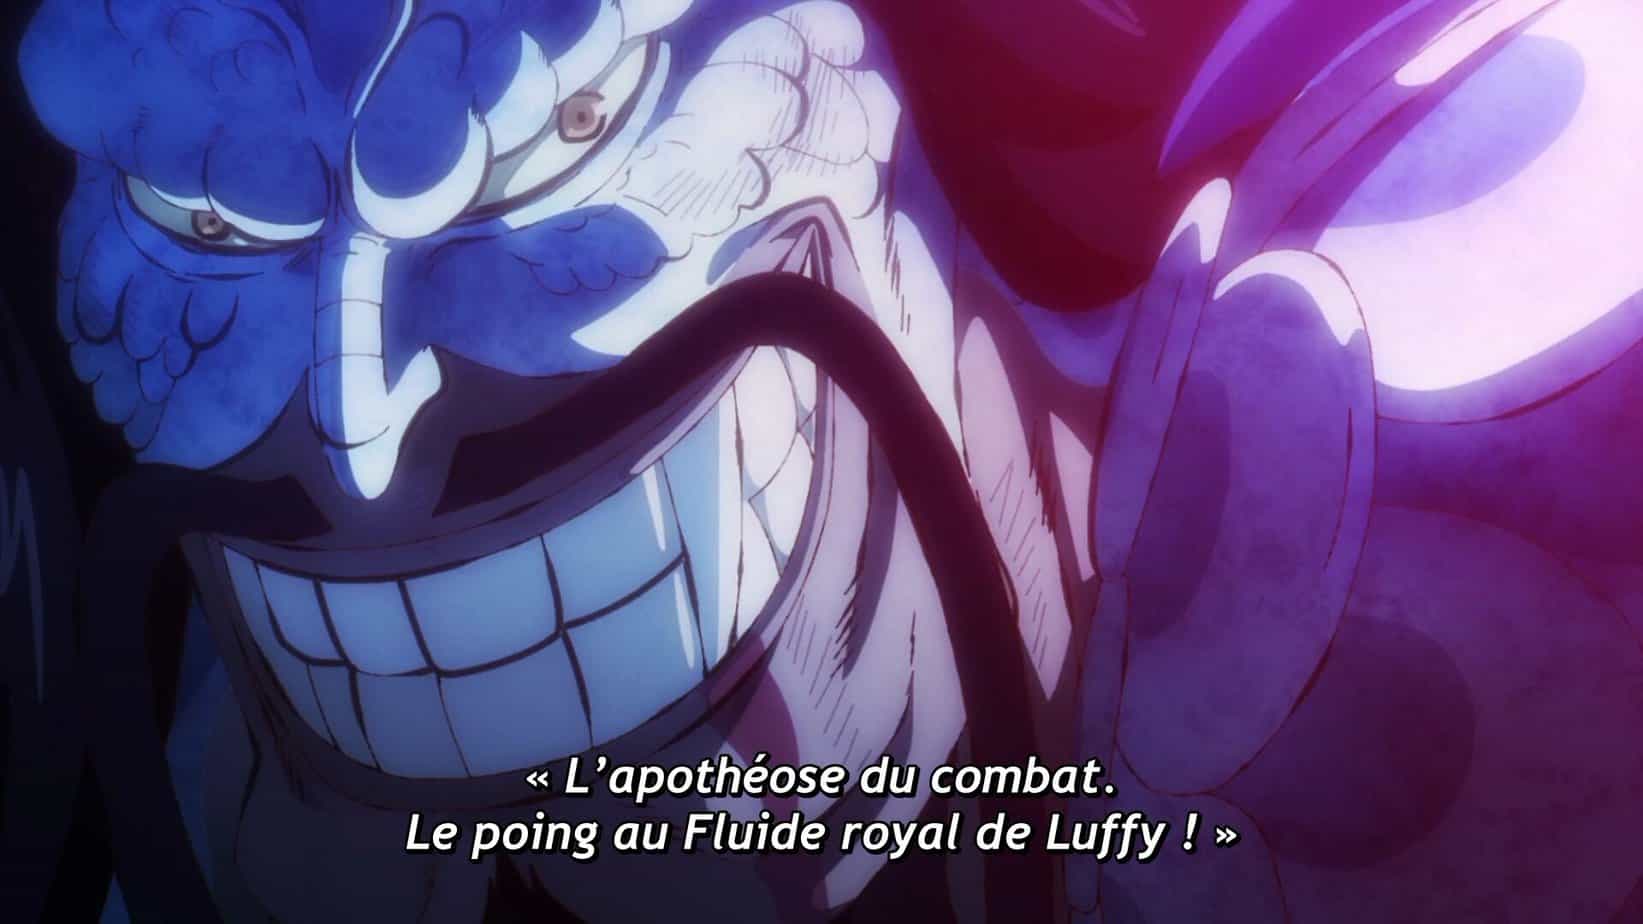 One piece 1032 vostfr - « L'apotheose du combat Le poing au Fluide royal de Luffy